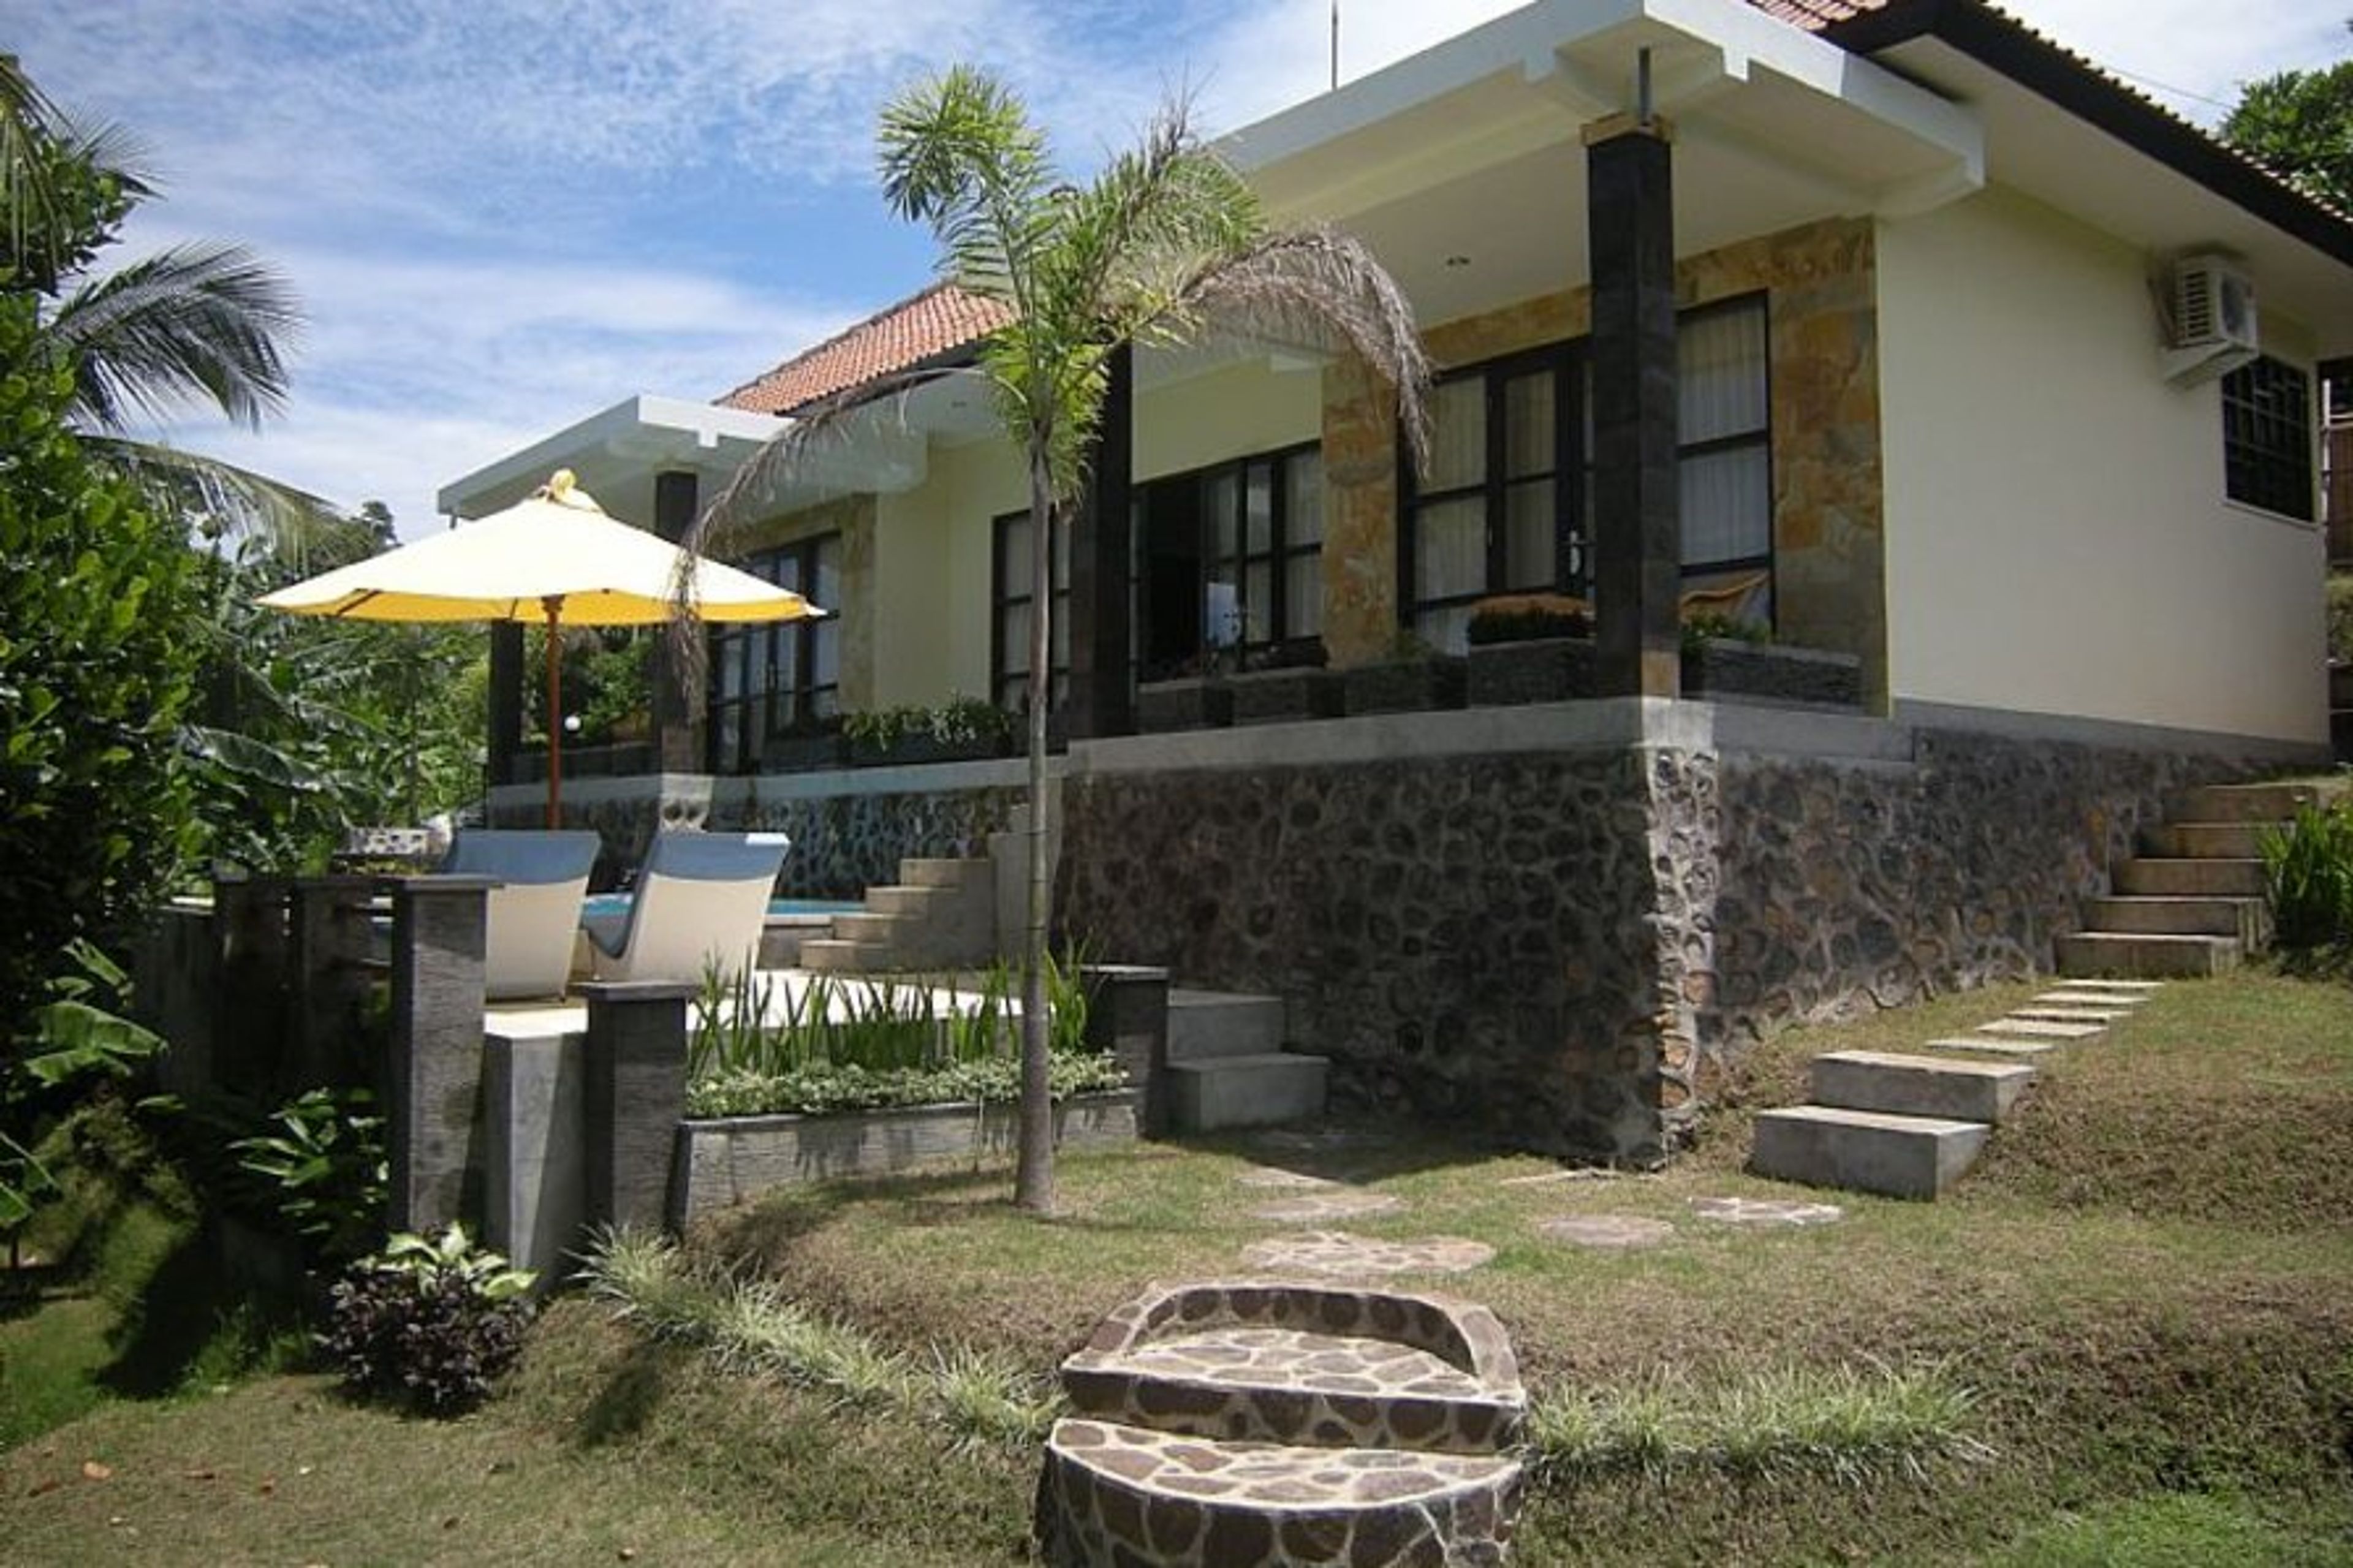 The villa